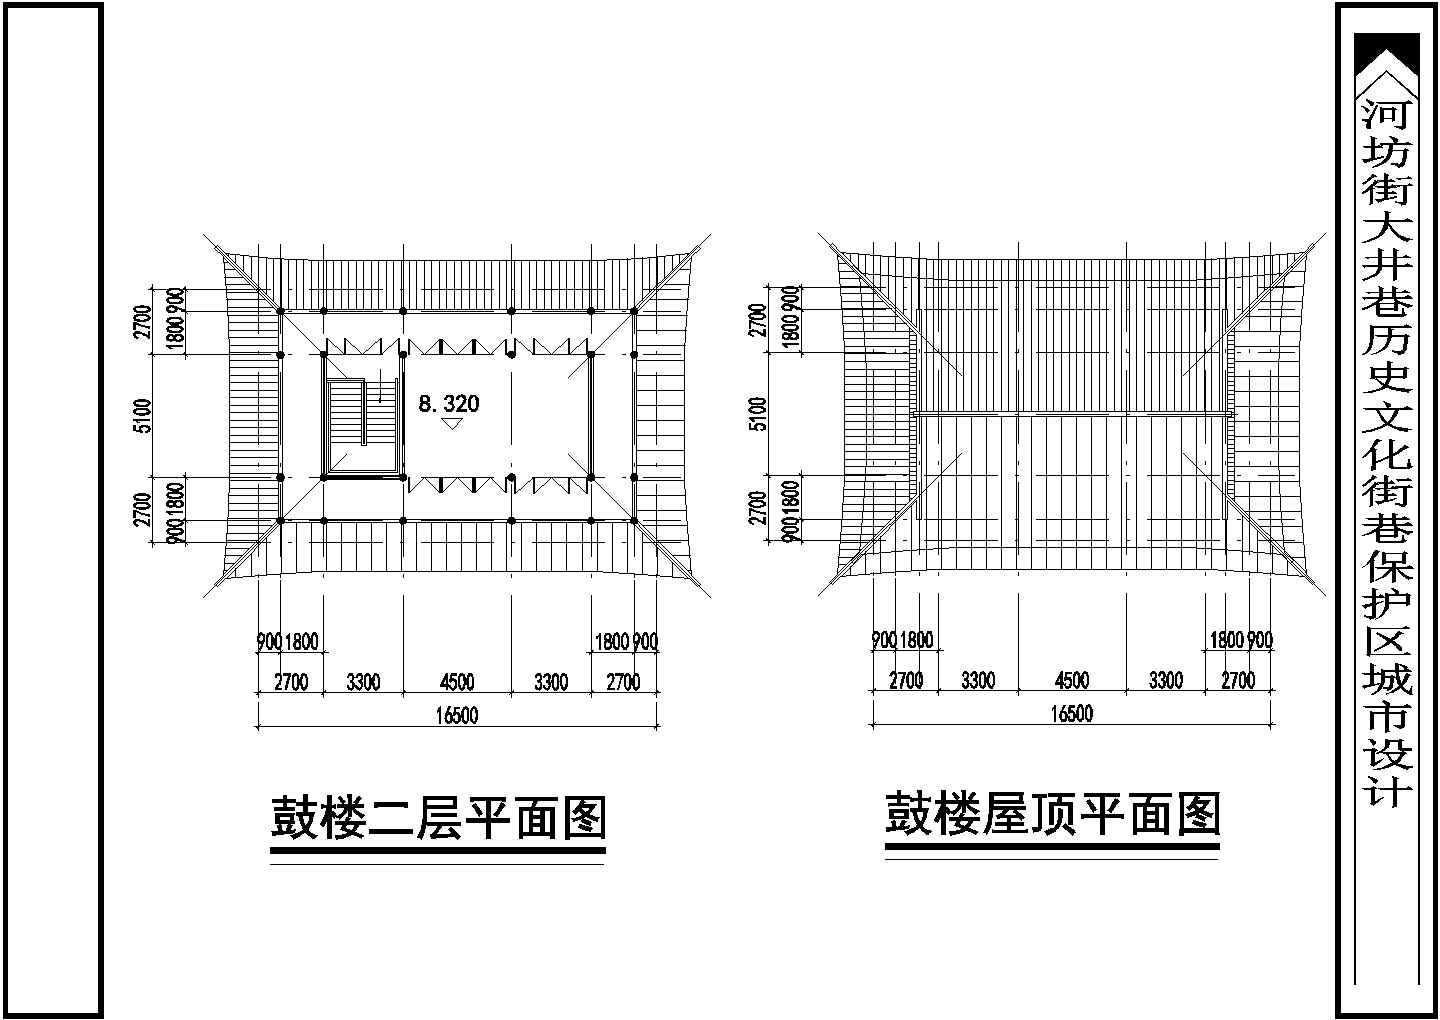 扬州市某文化公园2层仿古城楼建筑设计CAD图纸